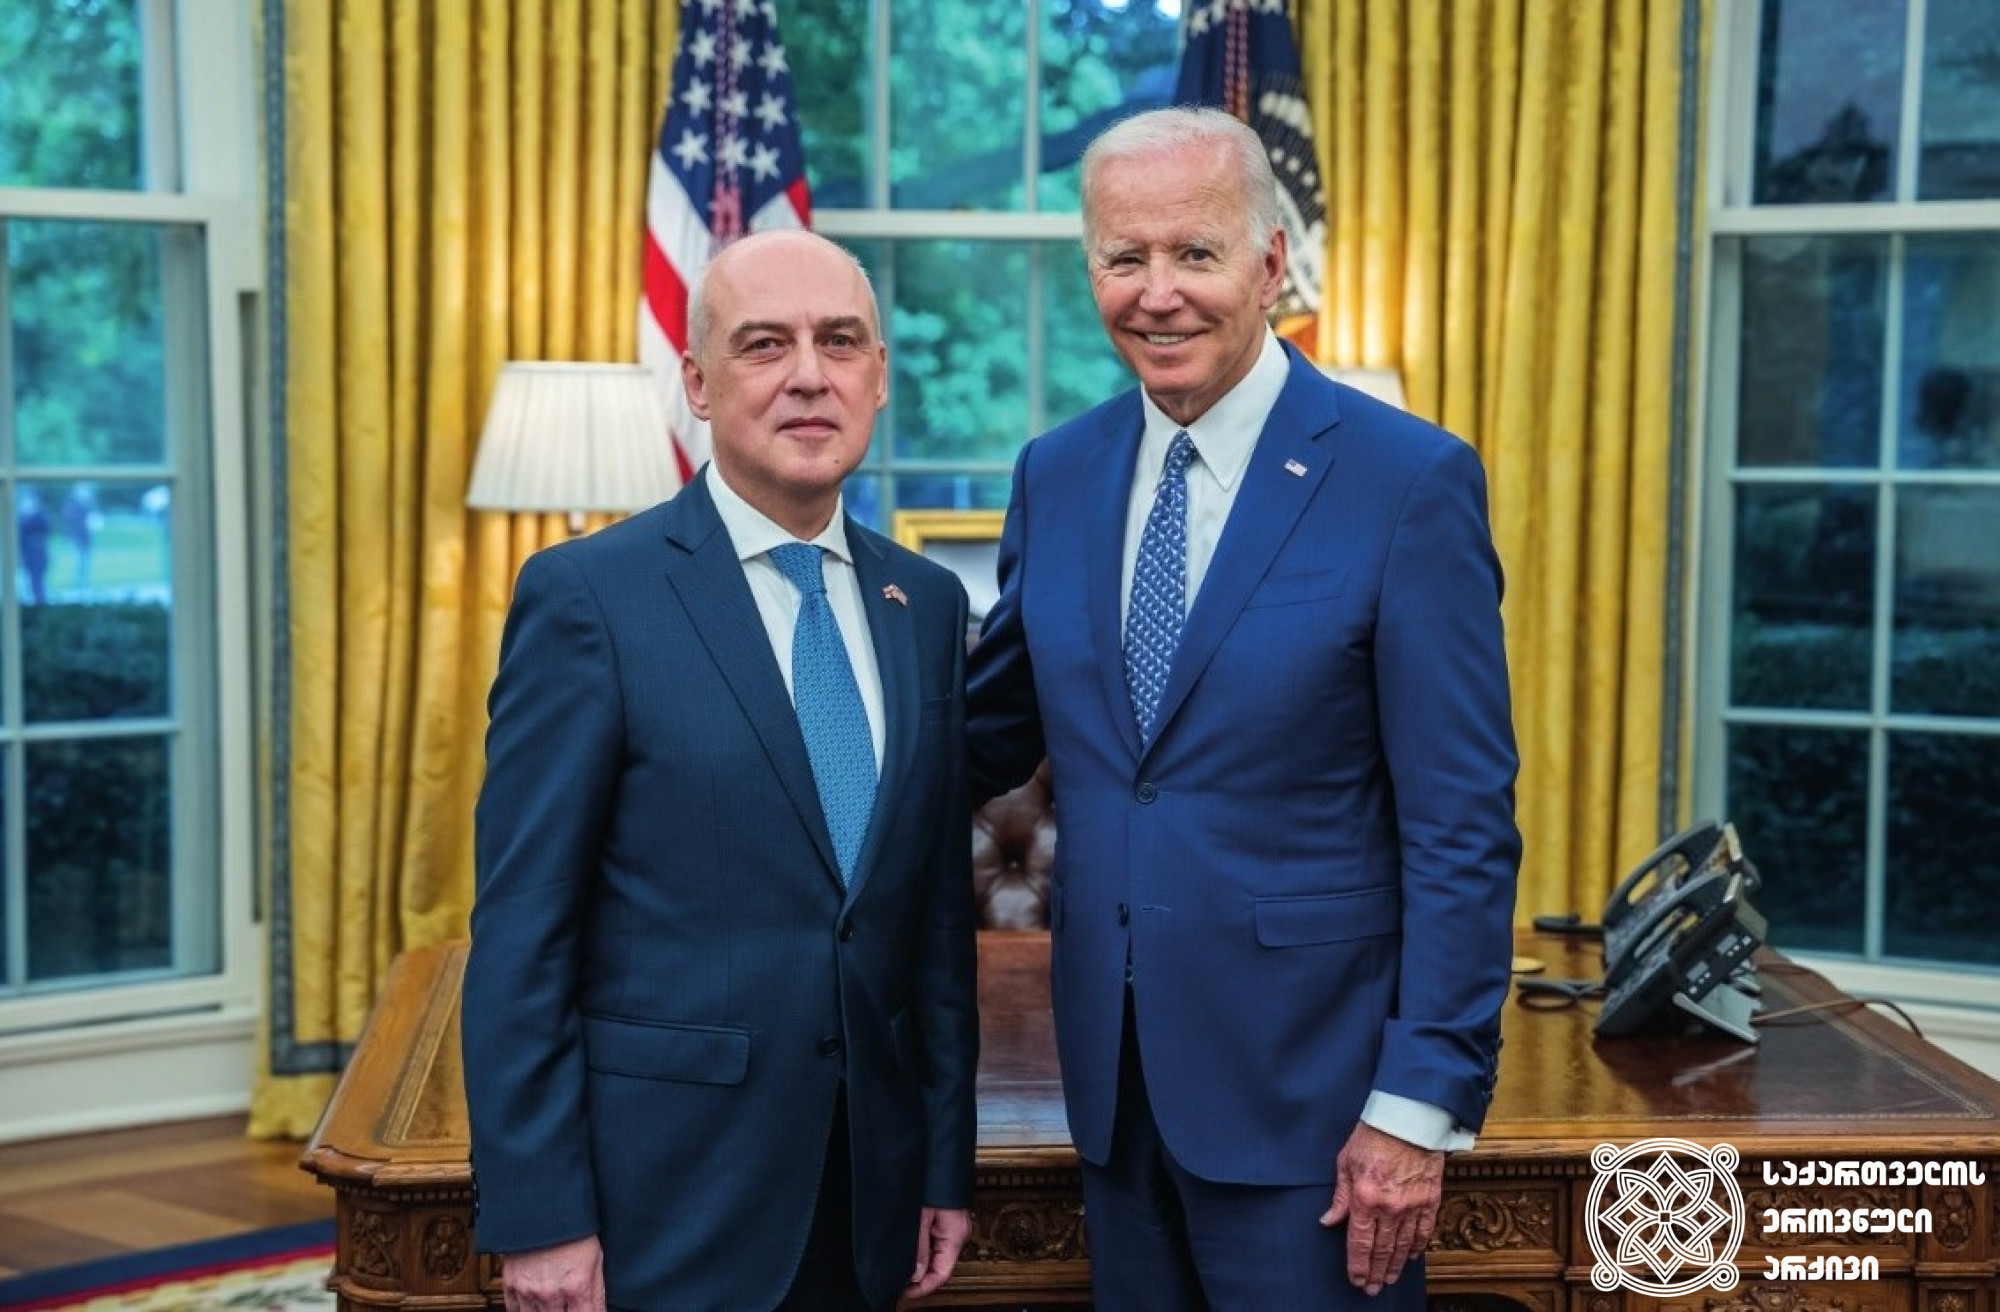 აშშ-ის პრეზიდენტი ჯოზეფ ბაიდენი და საქართველოს ელჩი აშშ-ში დავით ზალკალიანი. <br>
2022 წელი. <br>
ფოტო „თეთრი სახლიდან“. <br> 

U.S. President Joseph Biden and Ambassador of Georgia to U.S. David Zalkaniani. <br> 
2022. <br>
Photo from The White House.